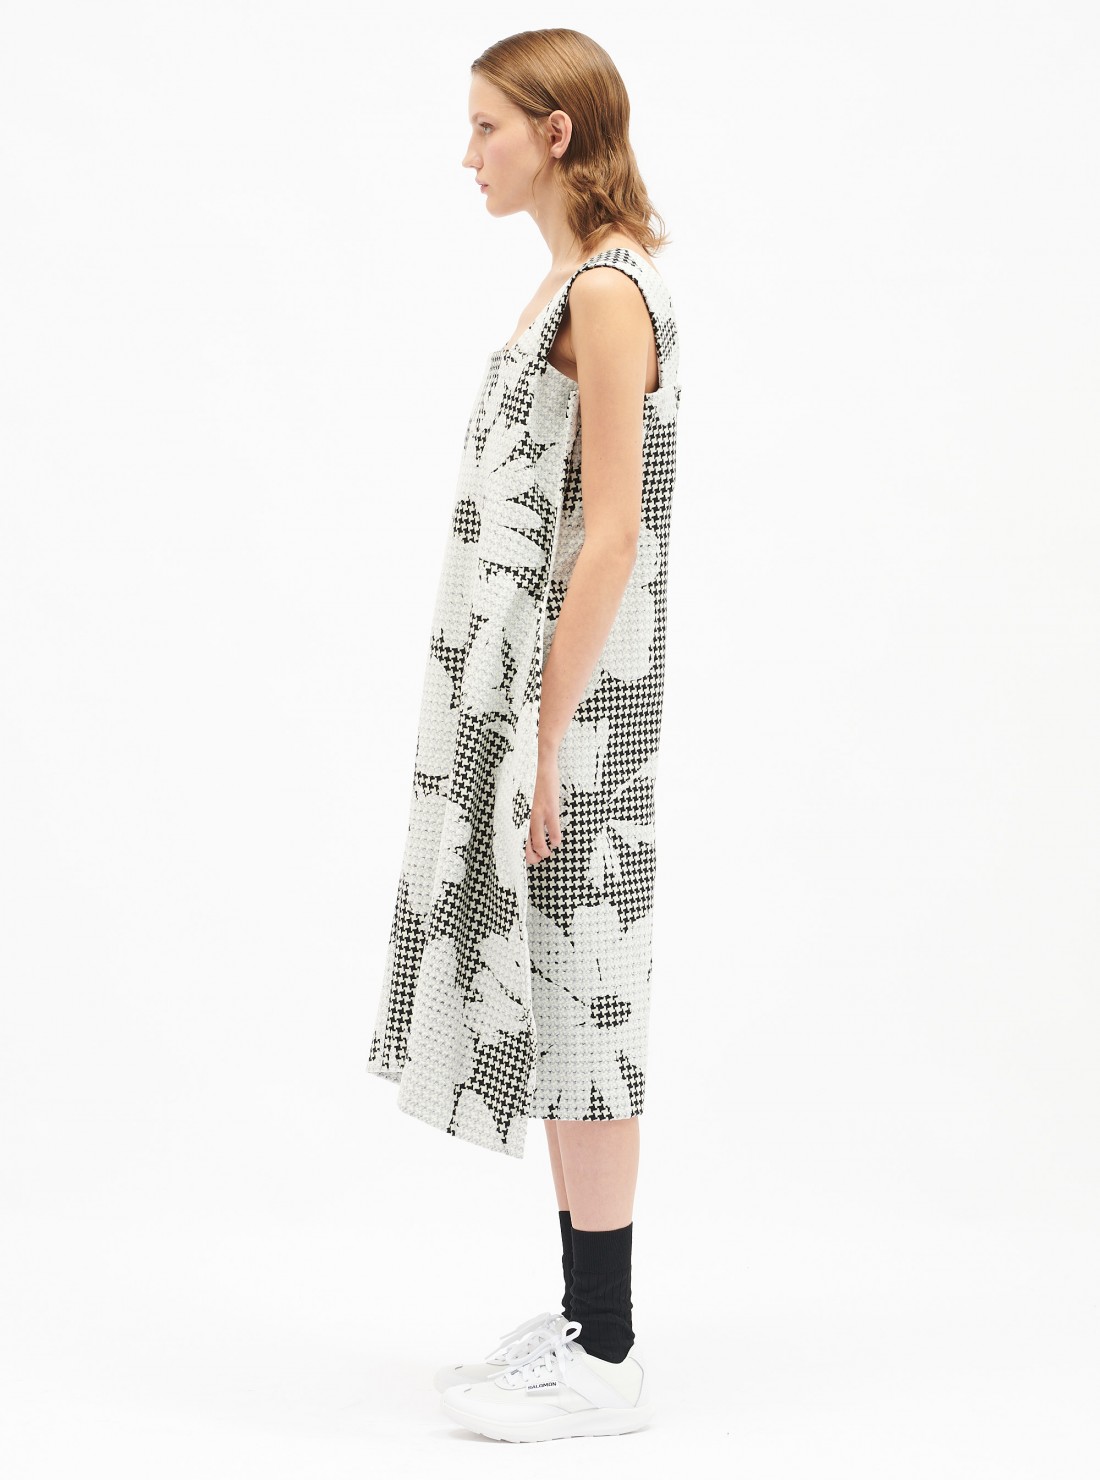 Wool tweed printed dress